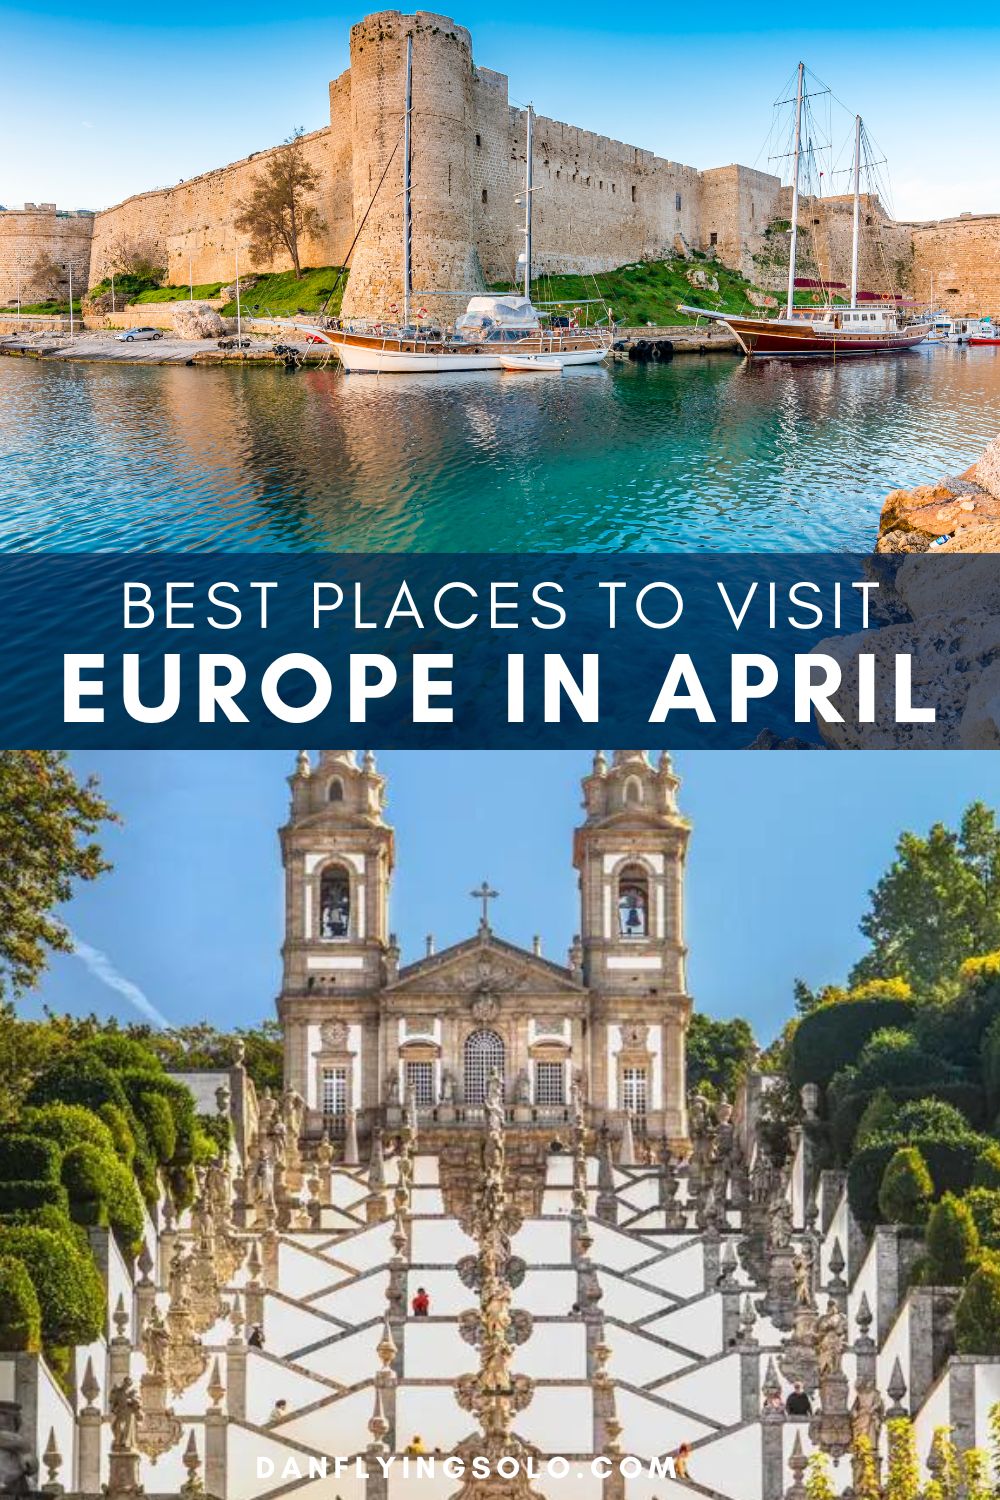 发现一些最好的地方去欧洲城市休息,4月复活节度假,一些欧洲最热的地方。